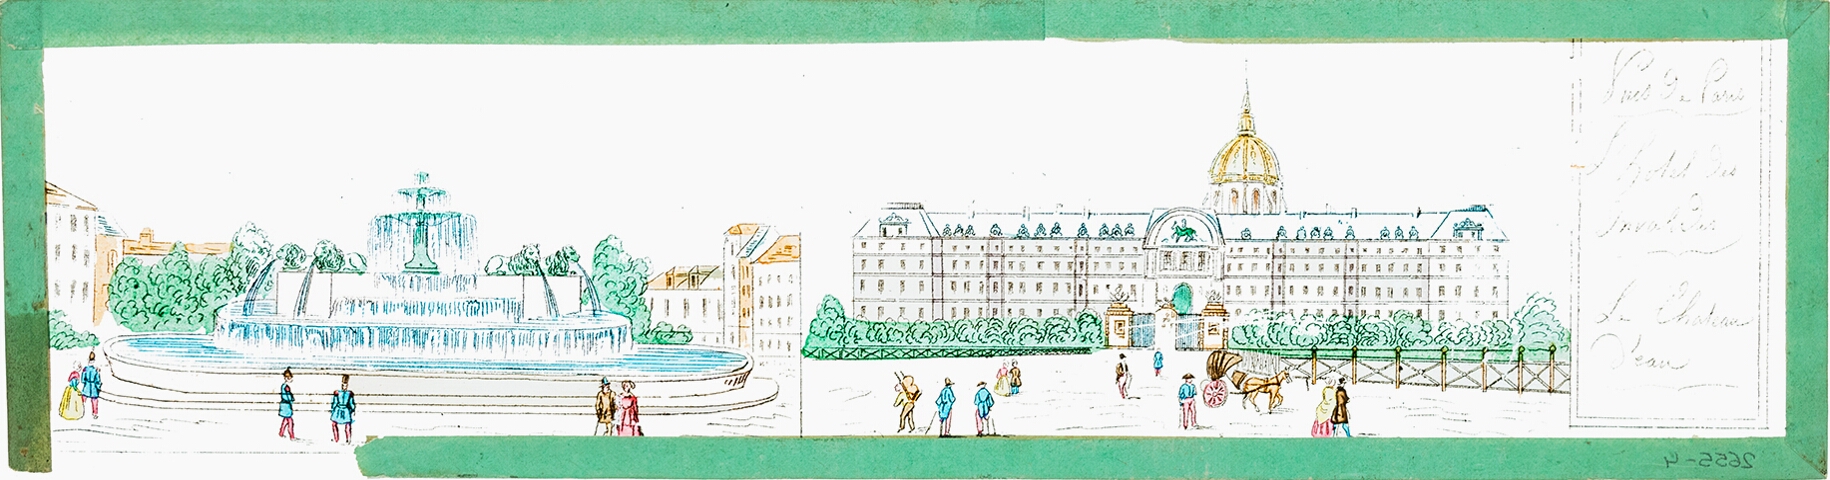 L'Hotel des Invalides / Le Chateau d'eau